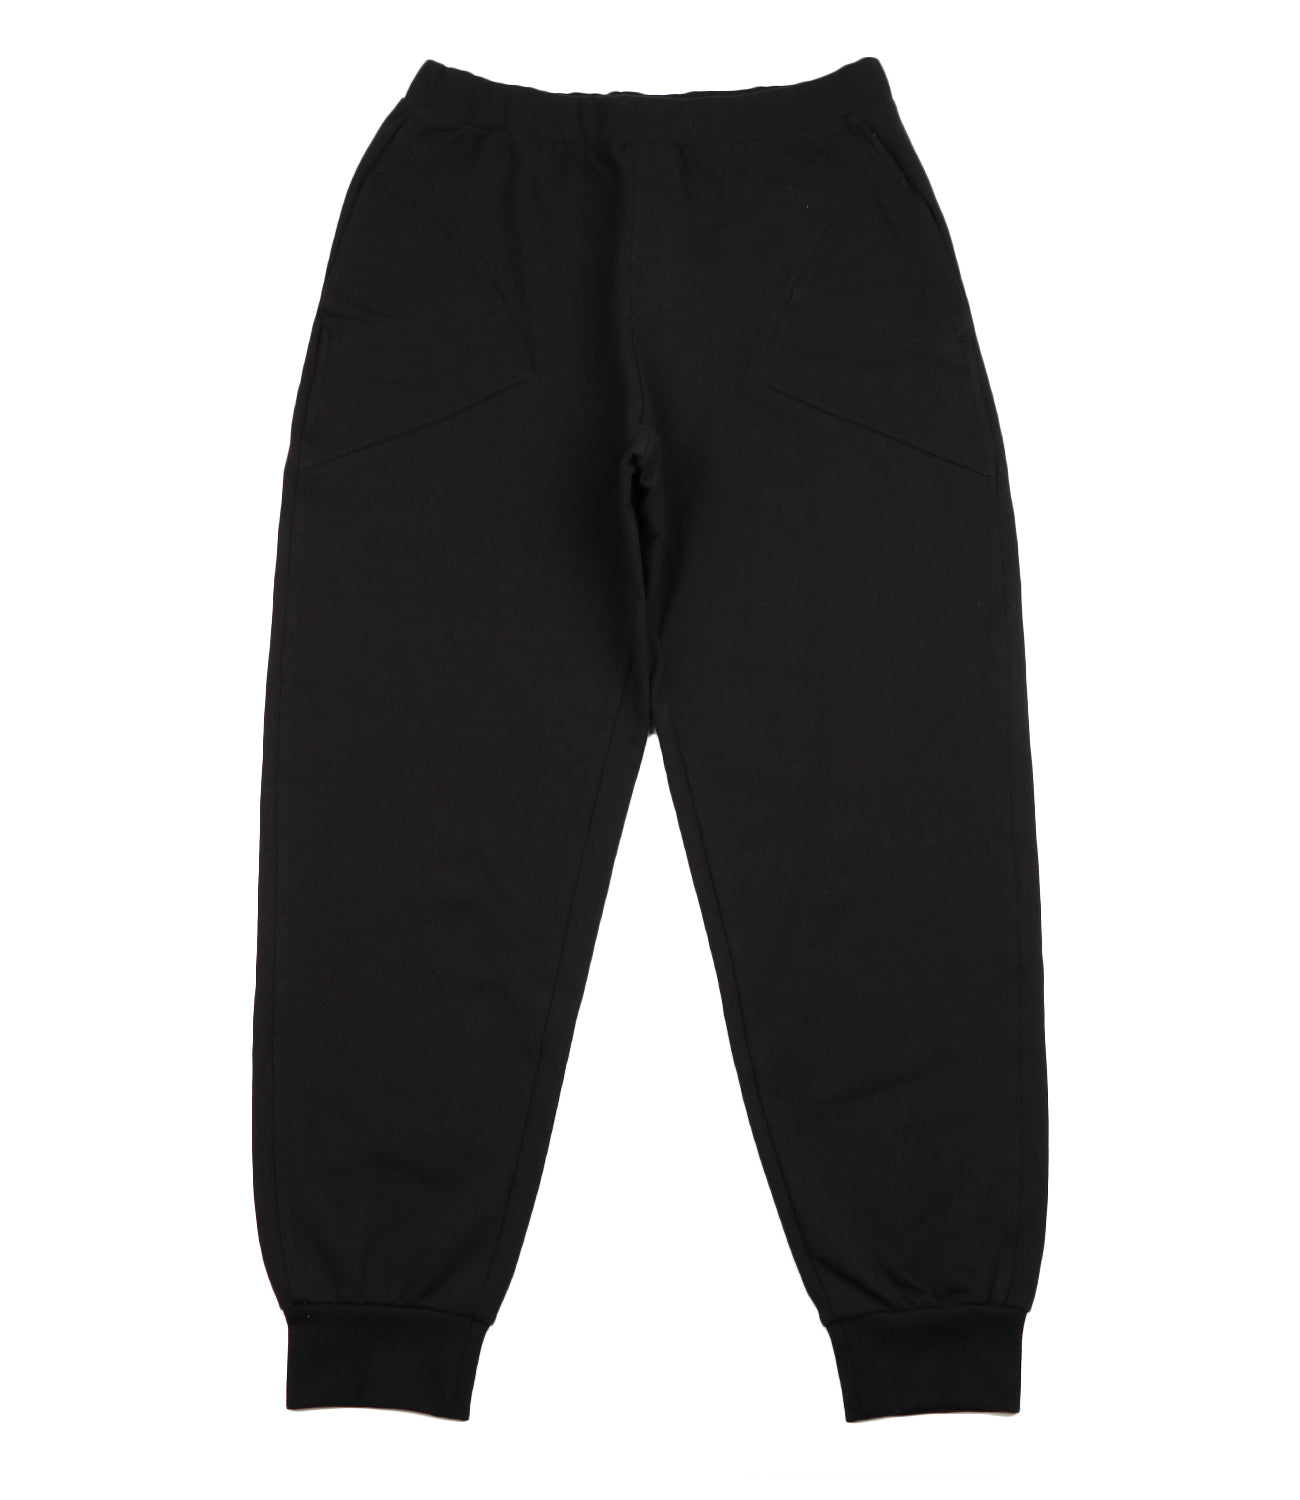 Black Sporty Pants